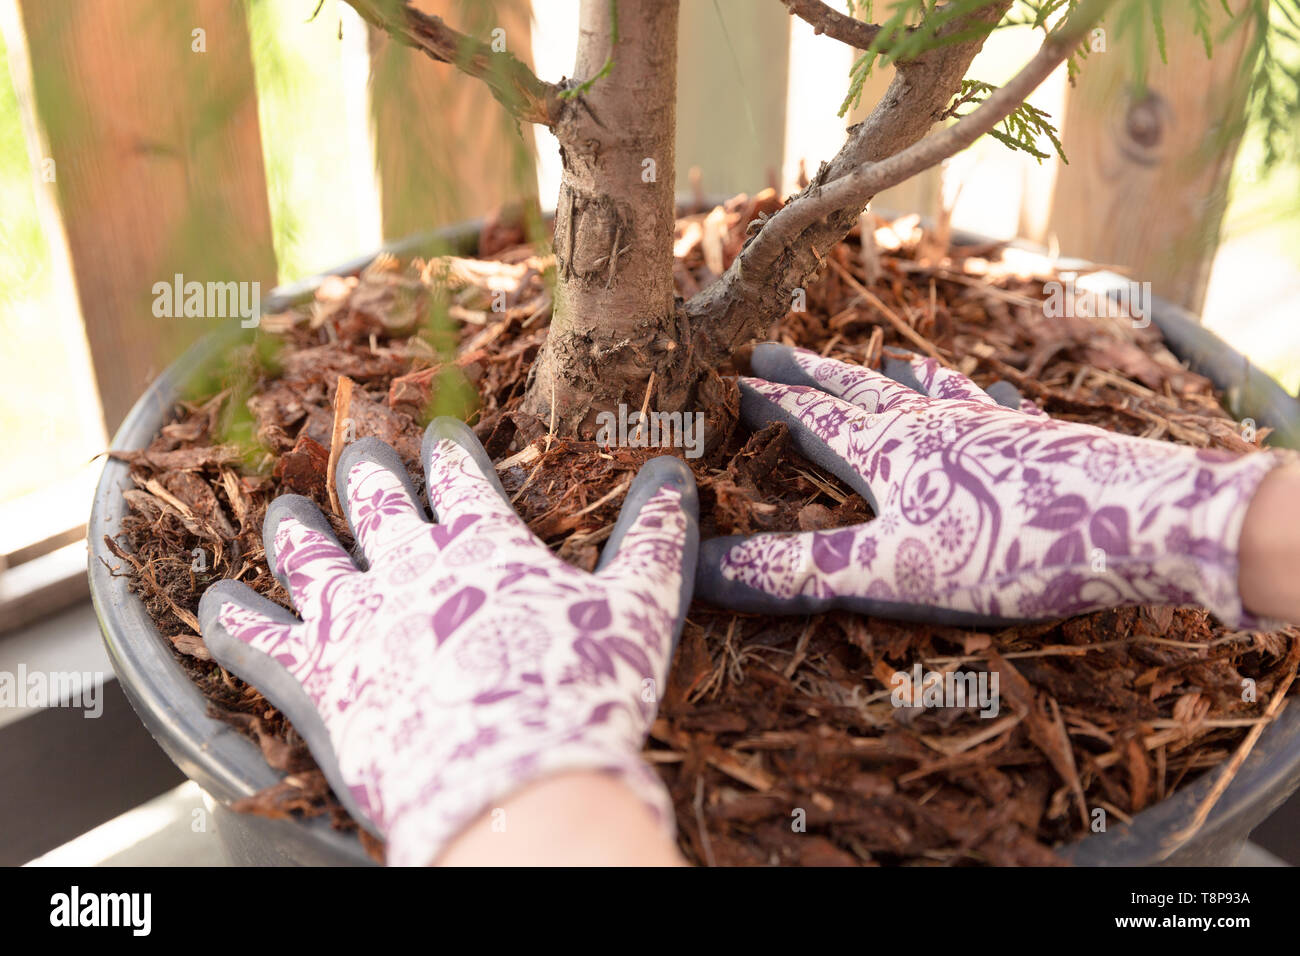 Woman gardener mulching potter thuja tree with pine tree bark mulch. Urban gardening Stock Photo